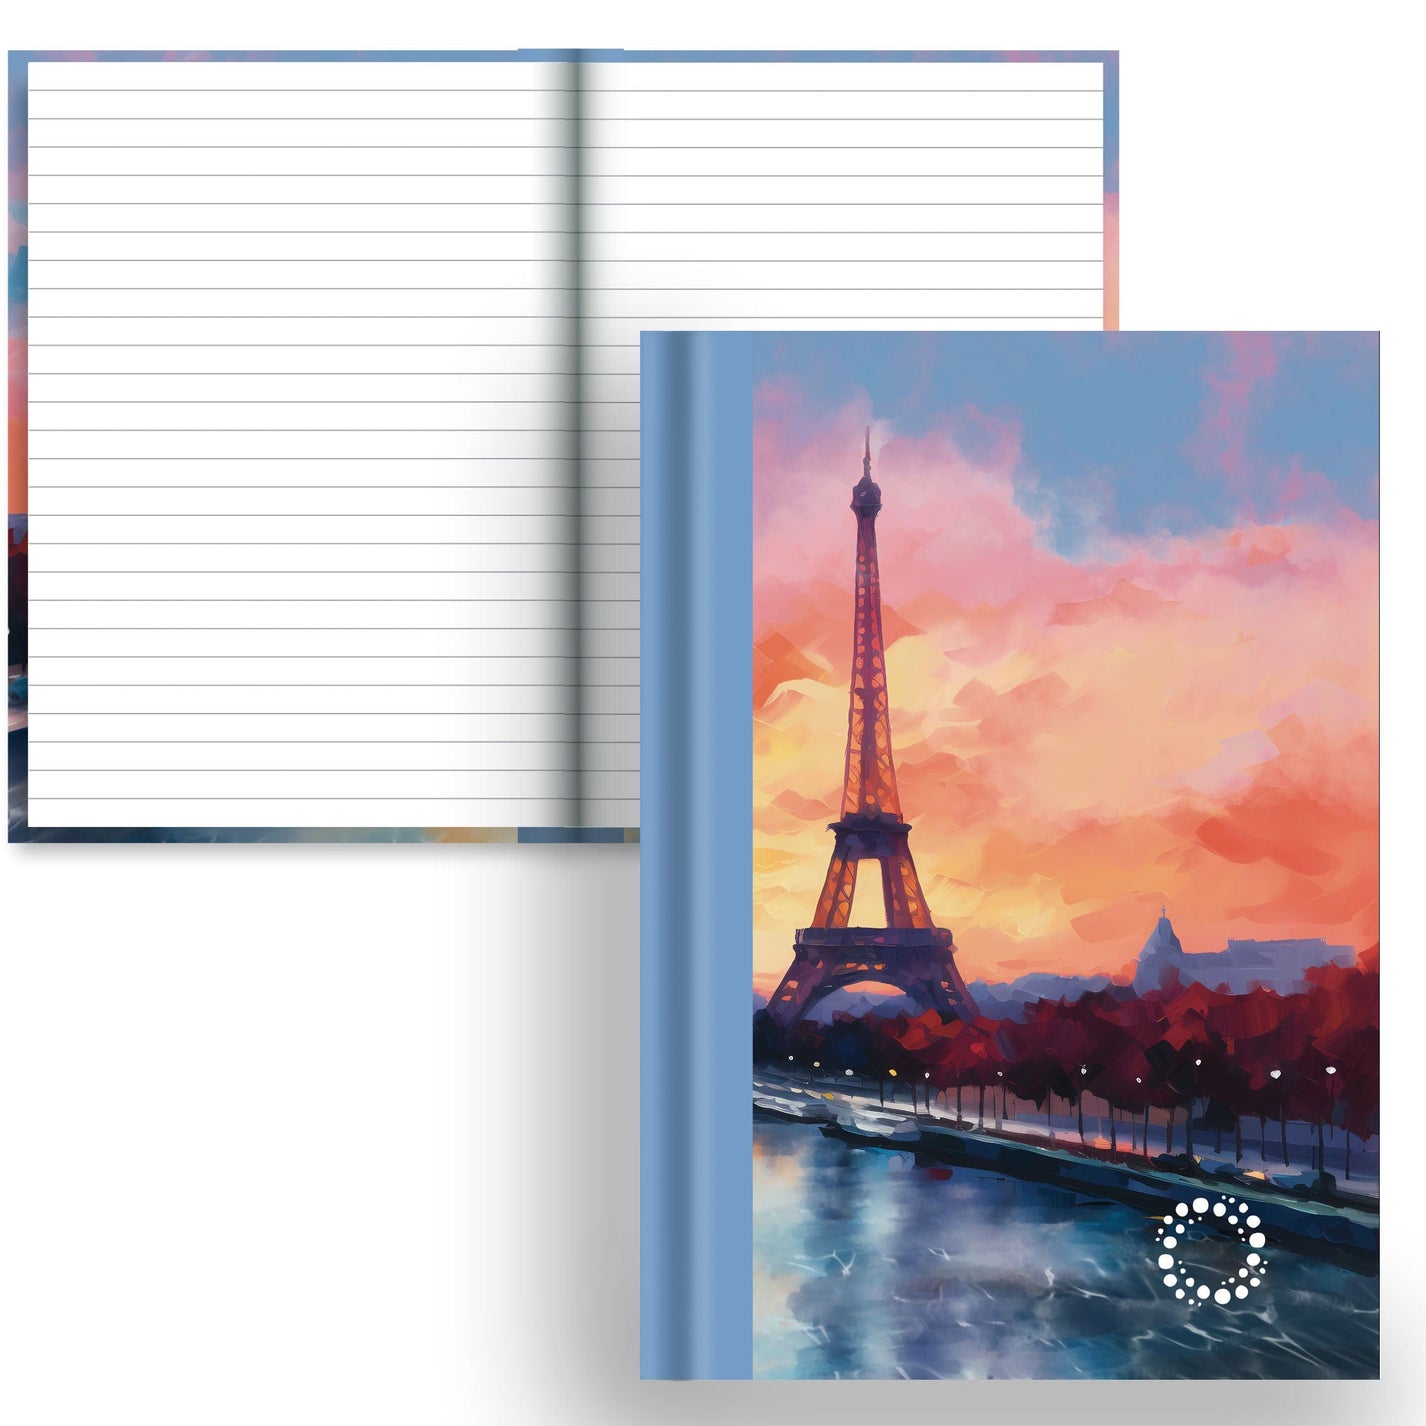 DayDot Journals A5 Notebook Lined Paper Seine - A5 Hardback Notebook